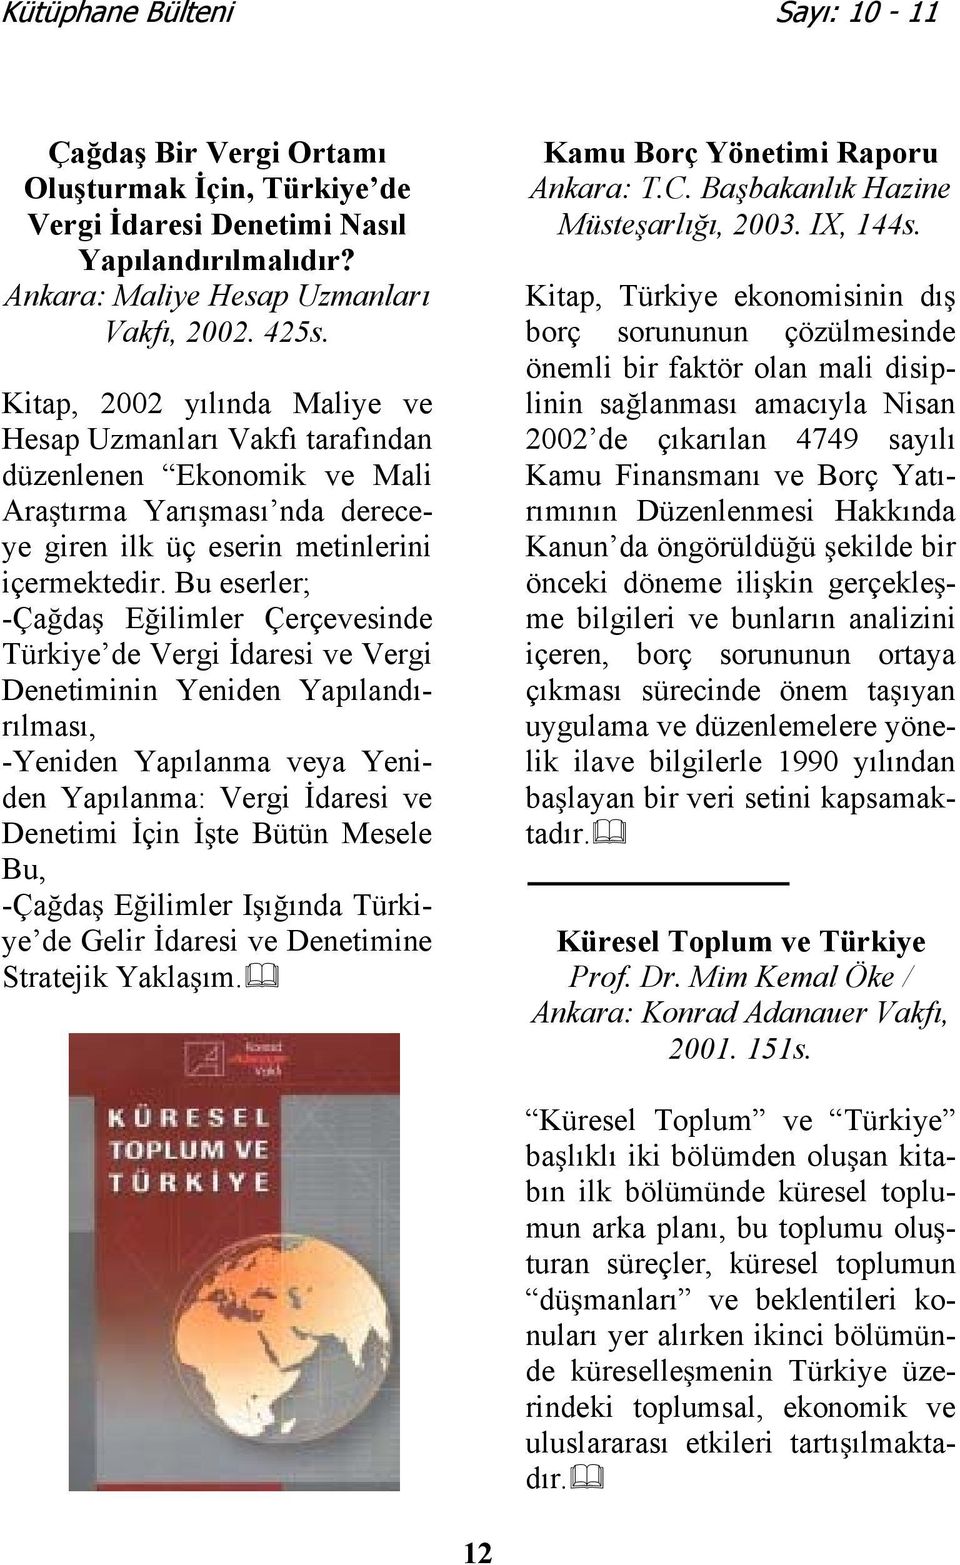 Bu eserler; -Çada Eilimler Çerçevesinde Türkiye de Vergi daresi ve Vergi Denetiminin Yeniden Yapılandırılması, -Yeniden Yapılanma veya Yeniden Yapılanma: Vergi daresi ve Denetimi çin te Bütün Mesele